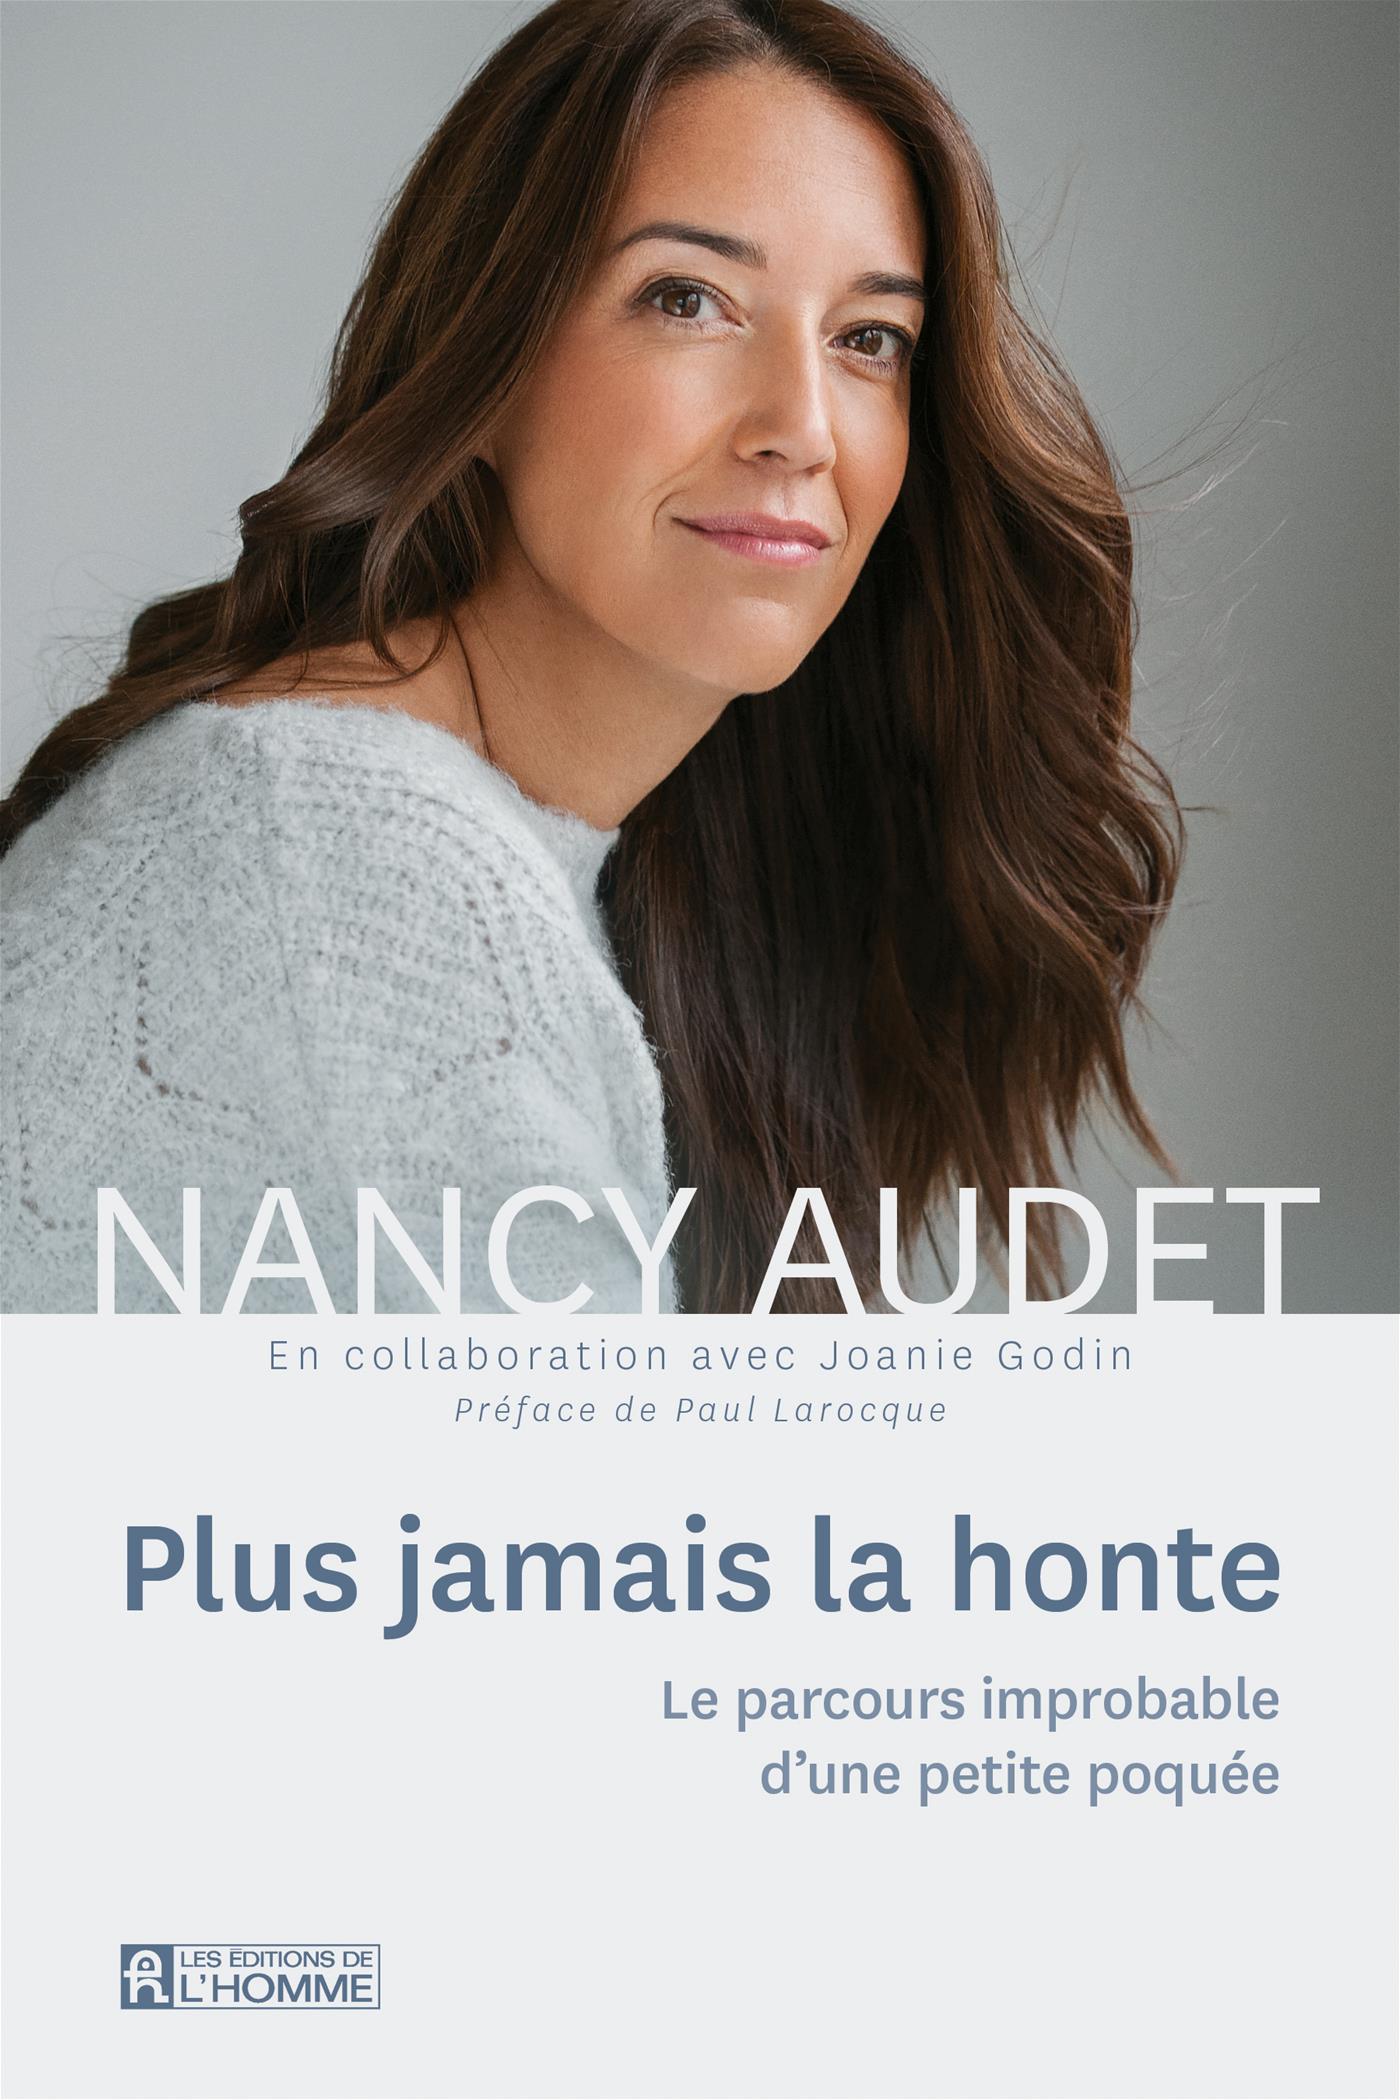 Conférenciers Québec, Formation, Motivation et Team Building - Formax - Nancy Audet - Conférencière, journaliste, animatrice, auteure et marraine de la Fondation des jeunes de la DPJ